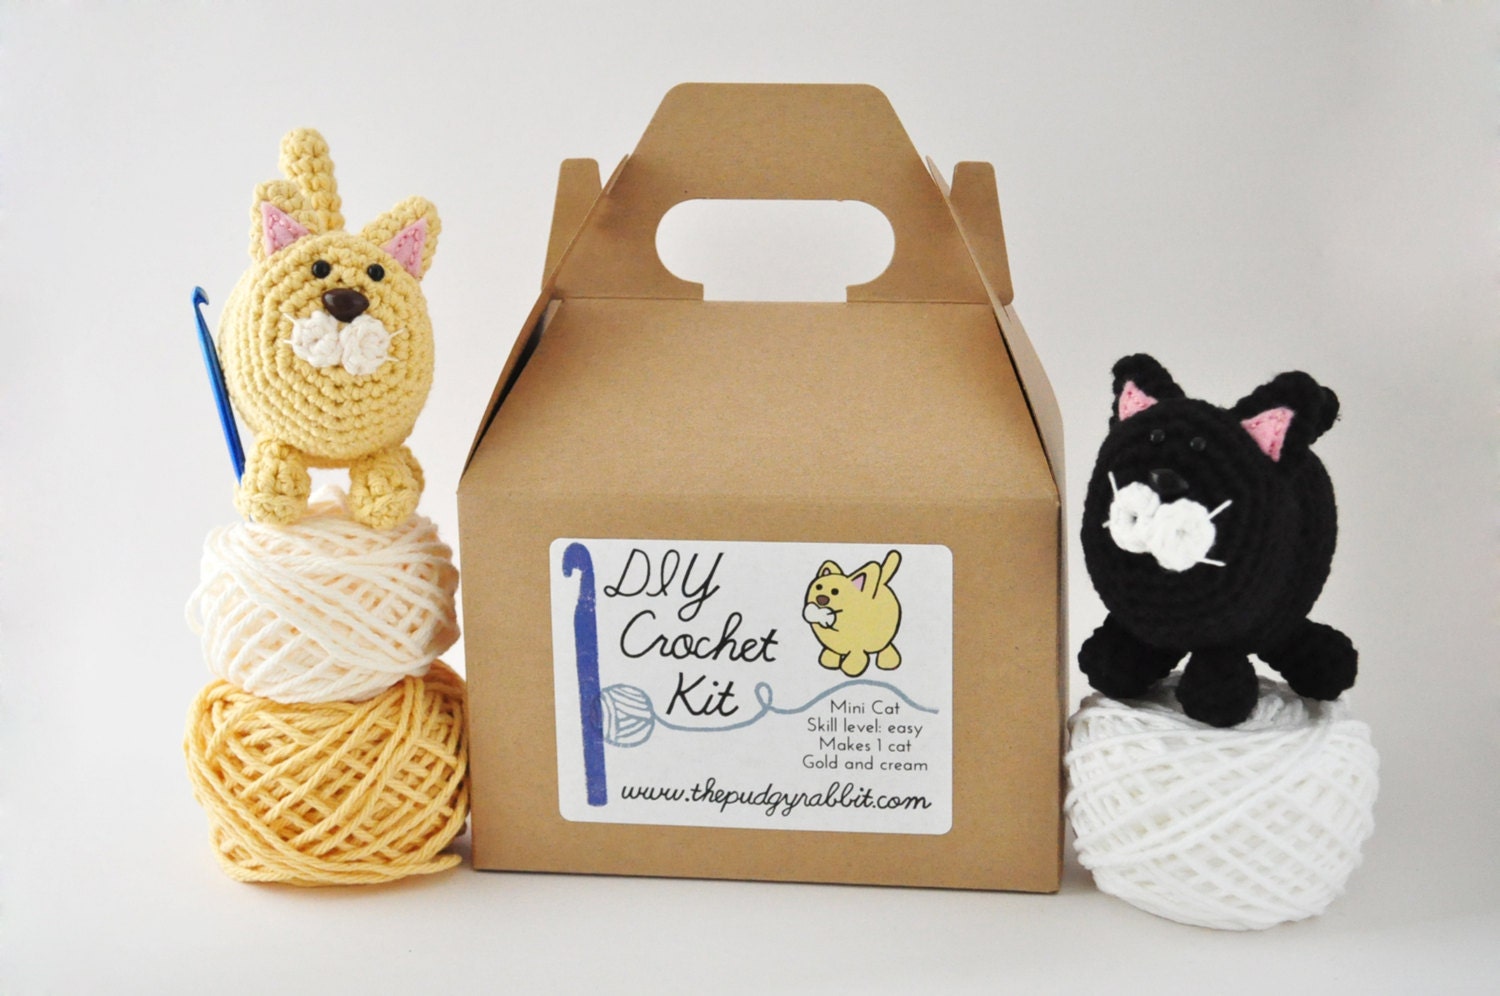 Crochet Kit Amigurumi Kit DIY Crochet Kit Learn by